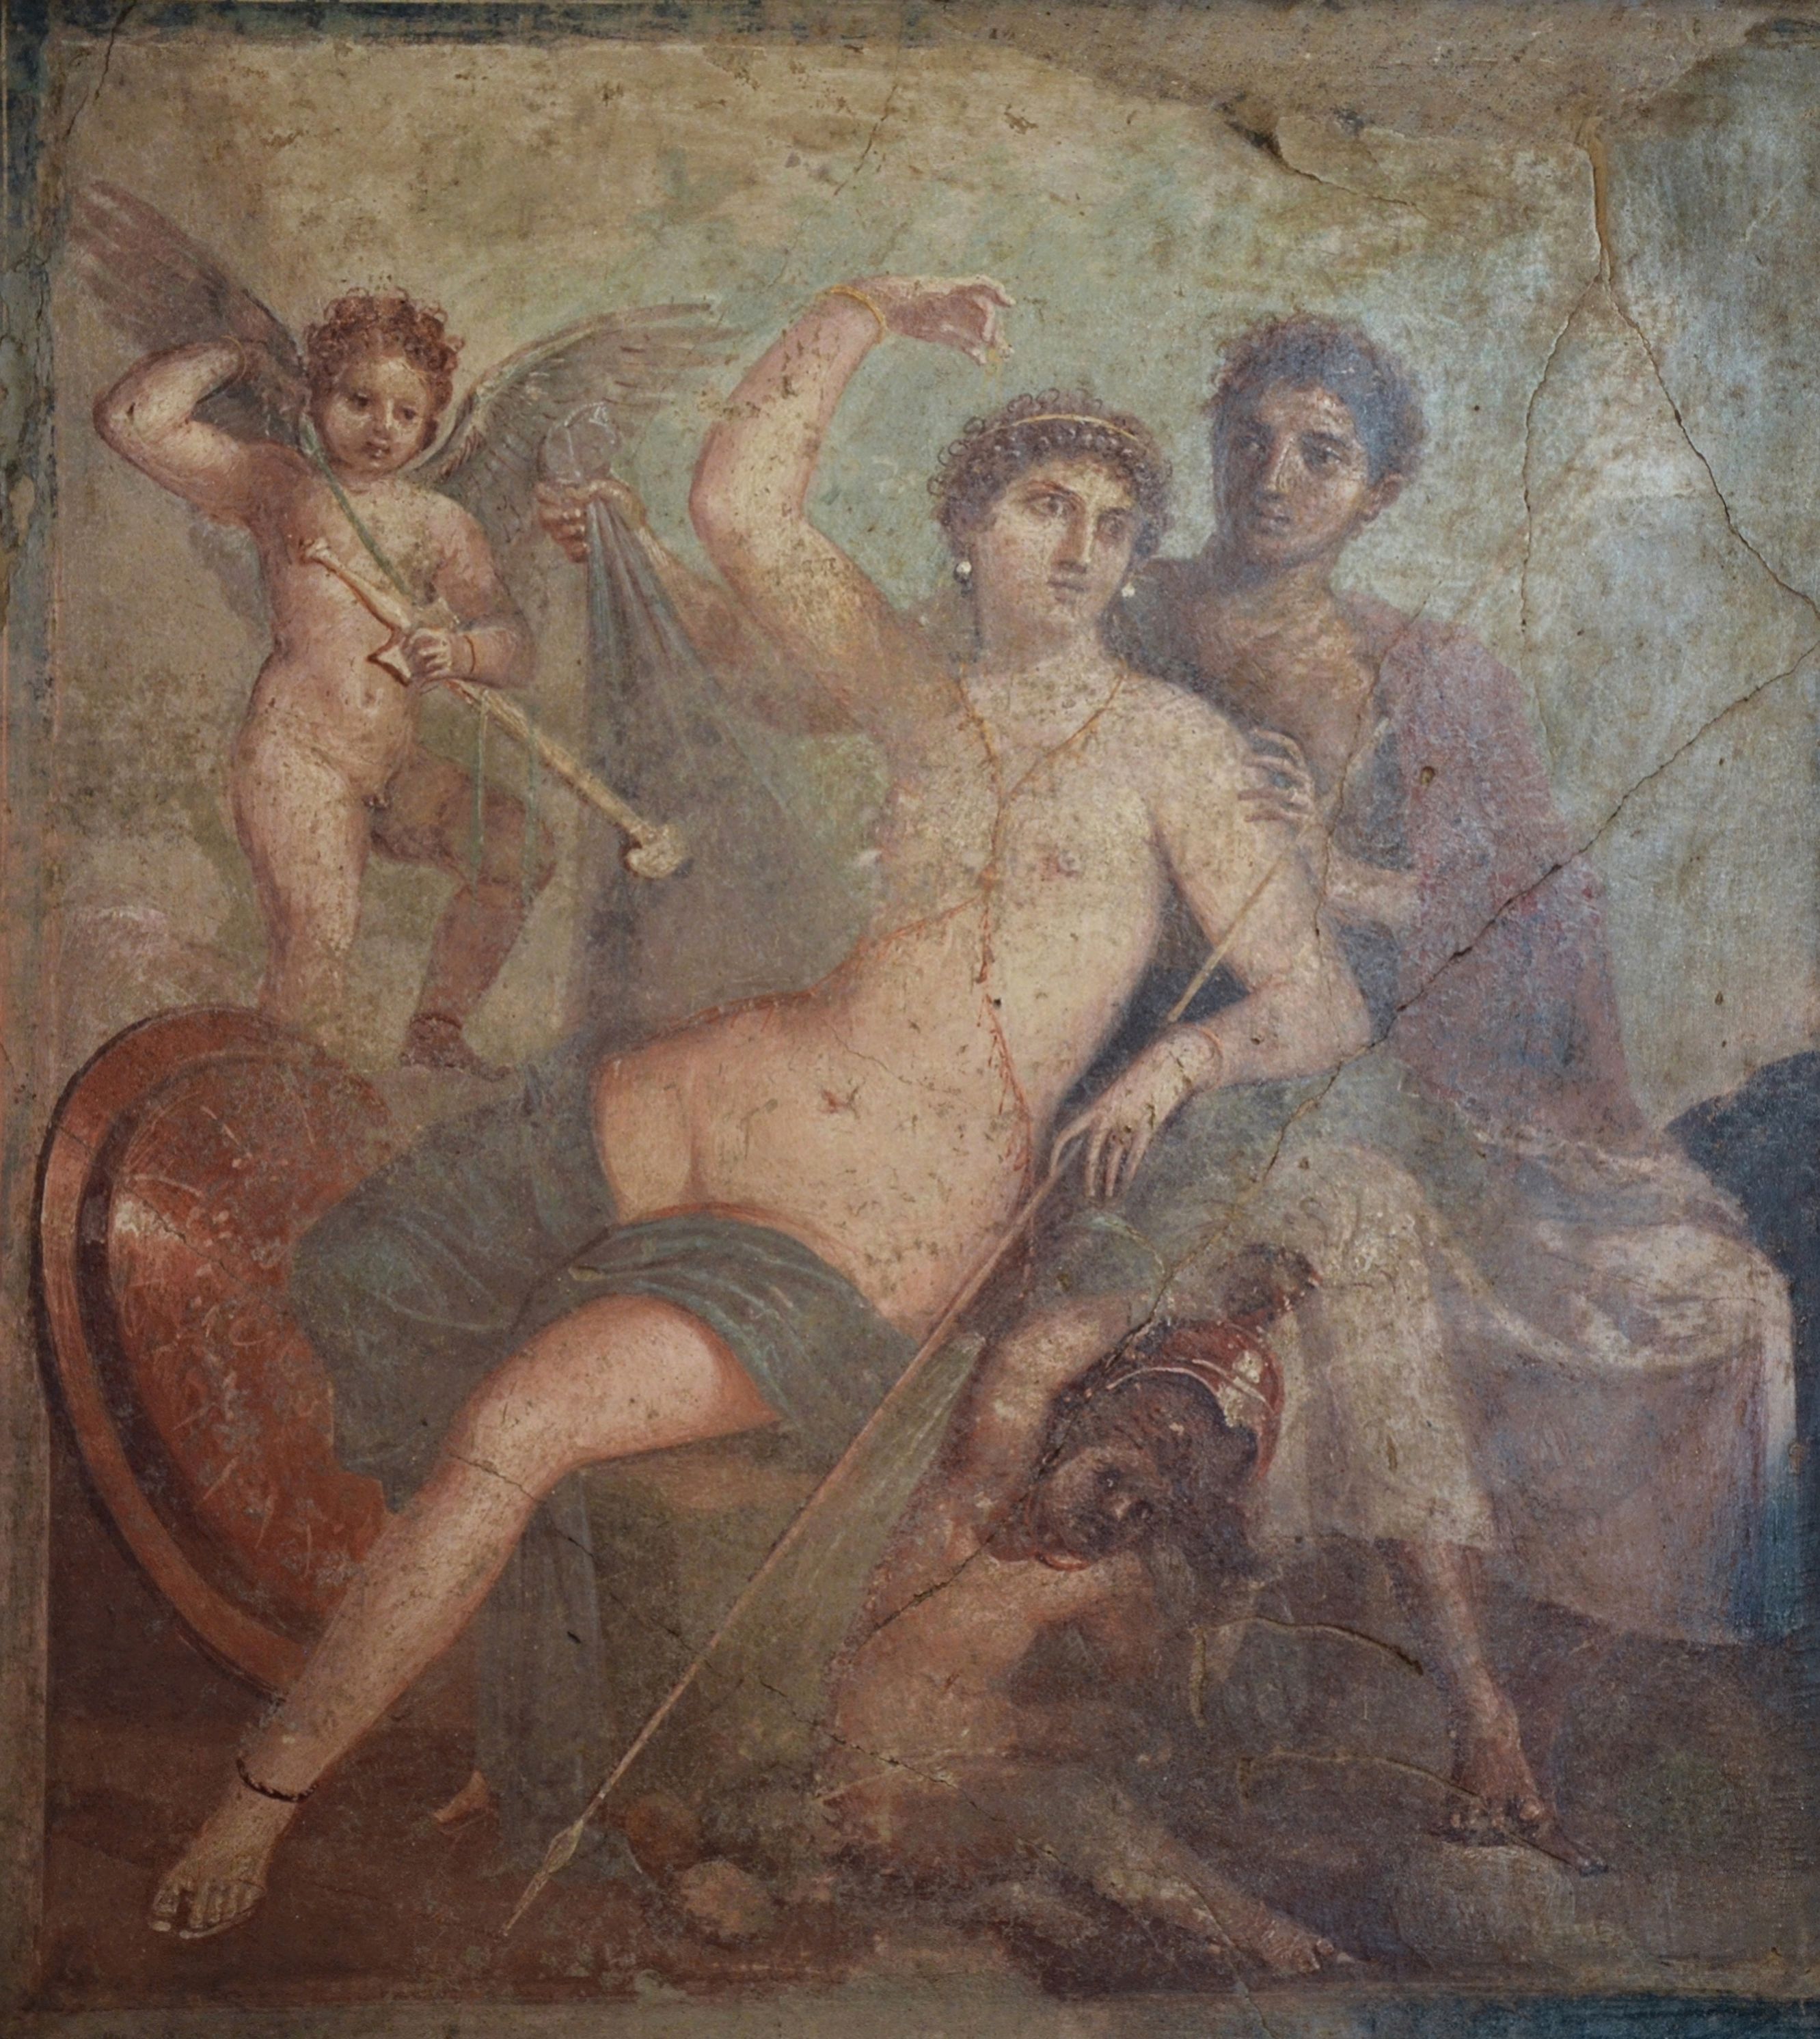 Roman body chain on fresco depicting Ares and Aphrodite found at Pompeii.